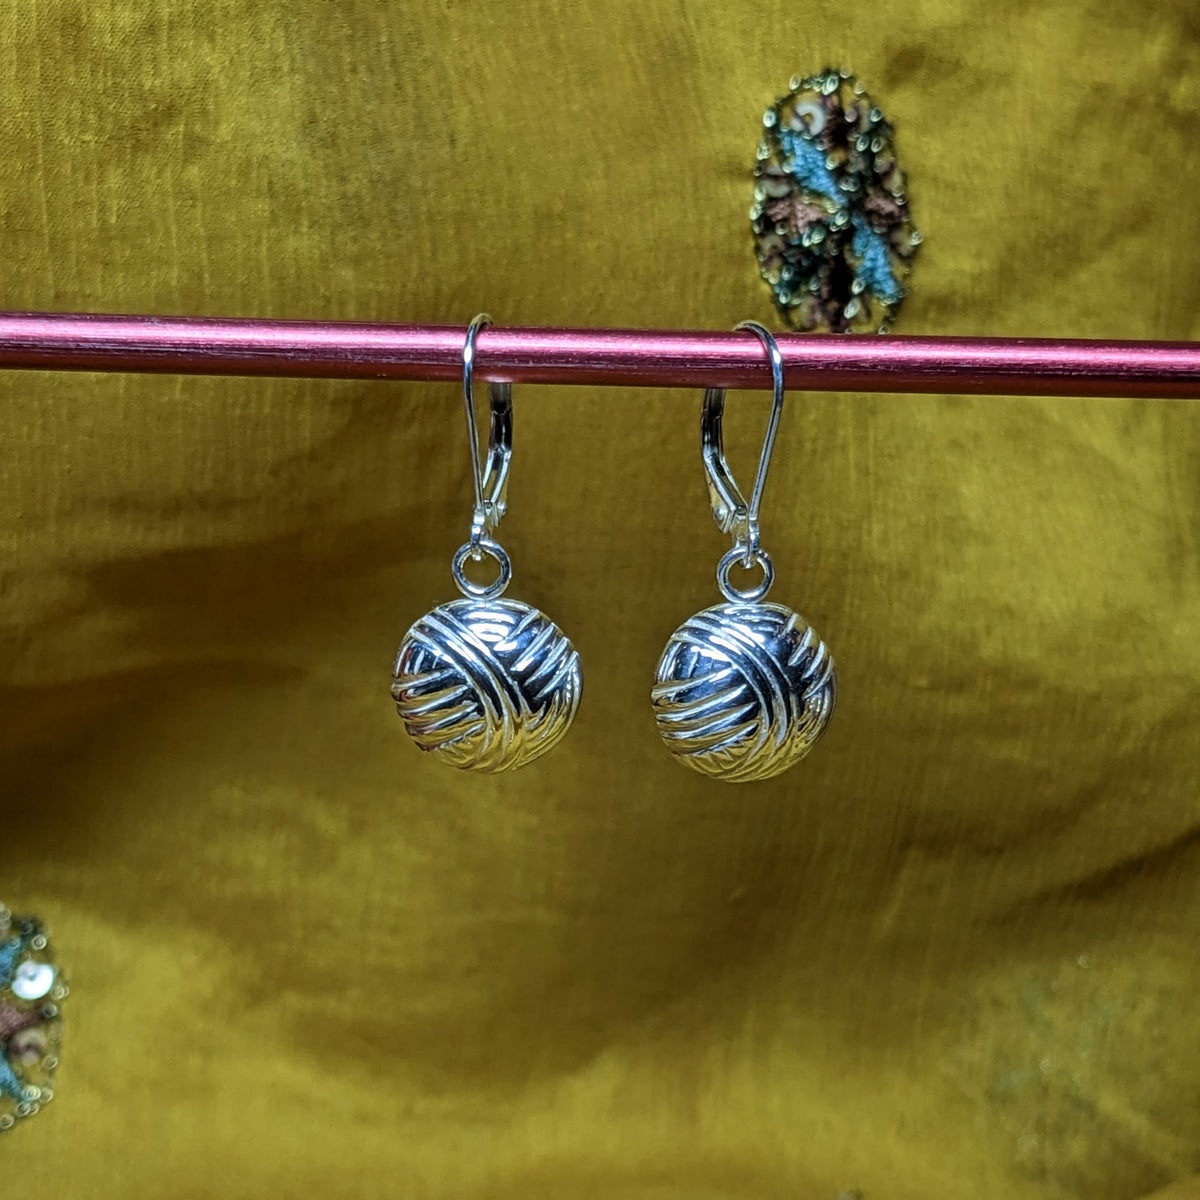 Yarn Ball Earrings- Sterling Silver